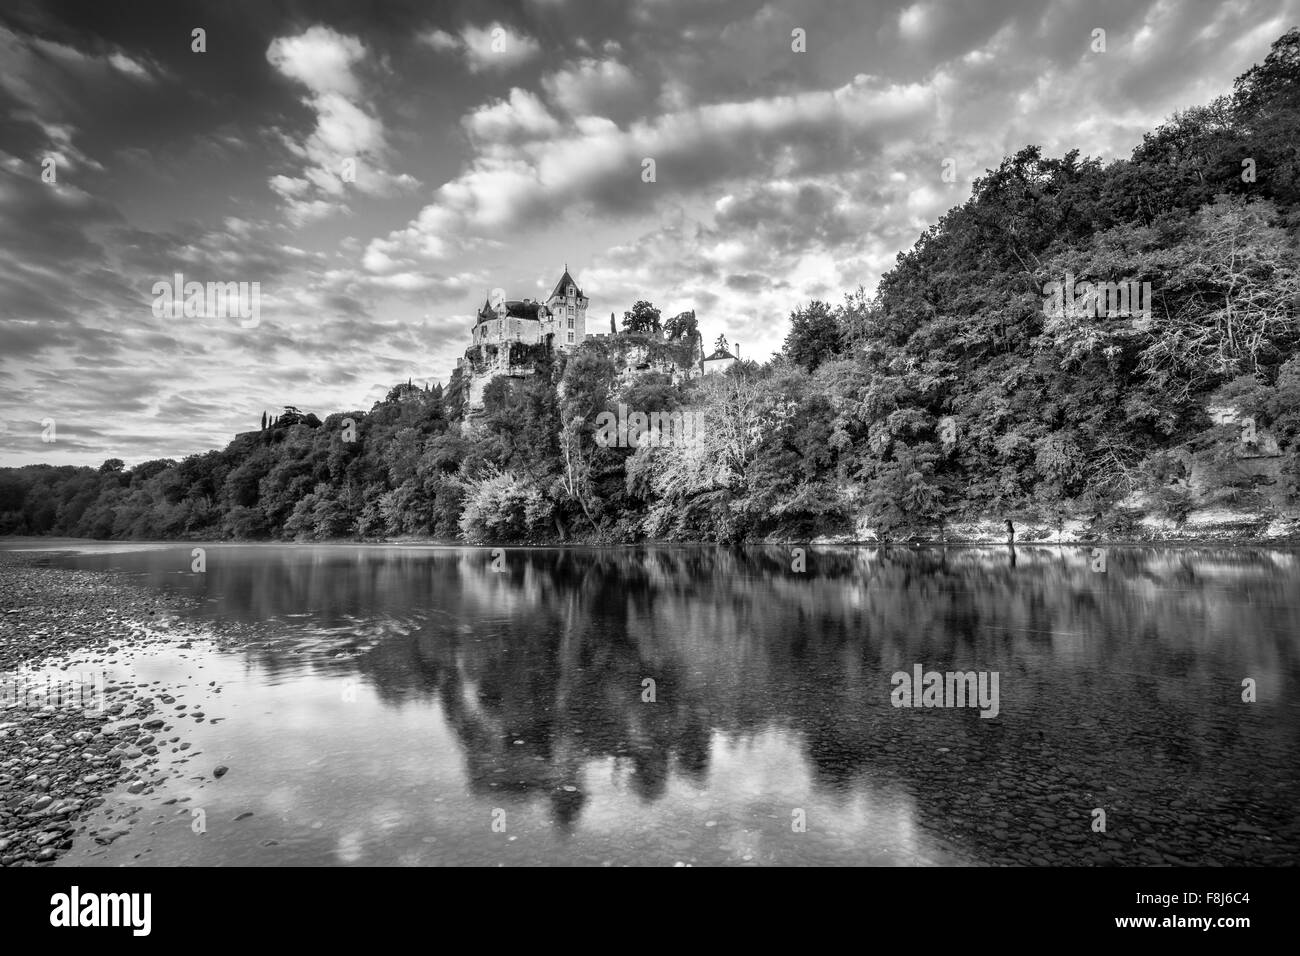 Chateau Monfort all'alba in bianco e nero Foto Stock